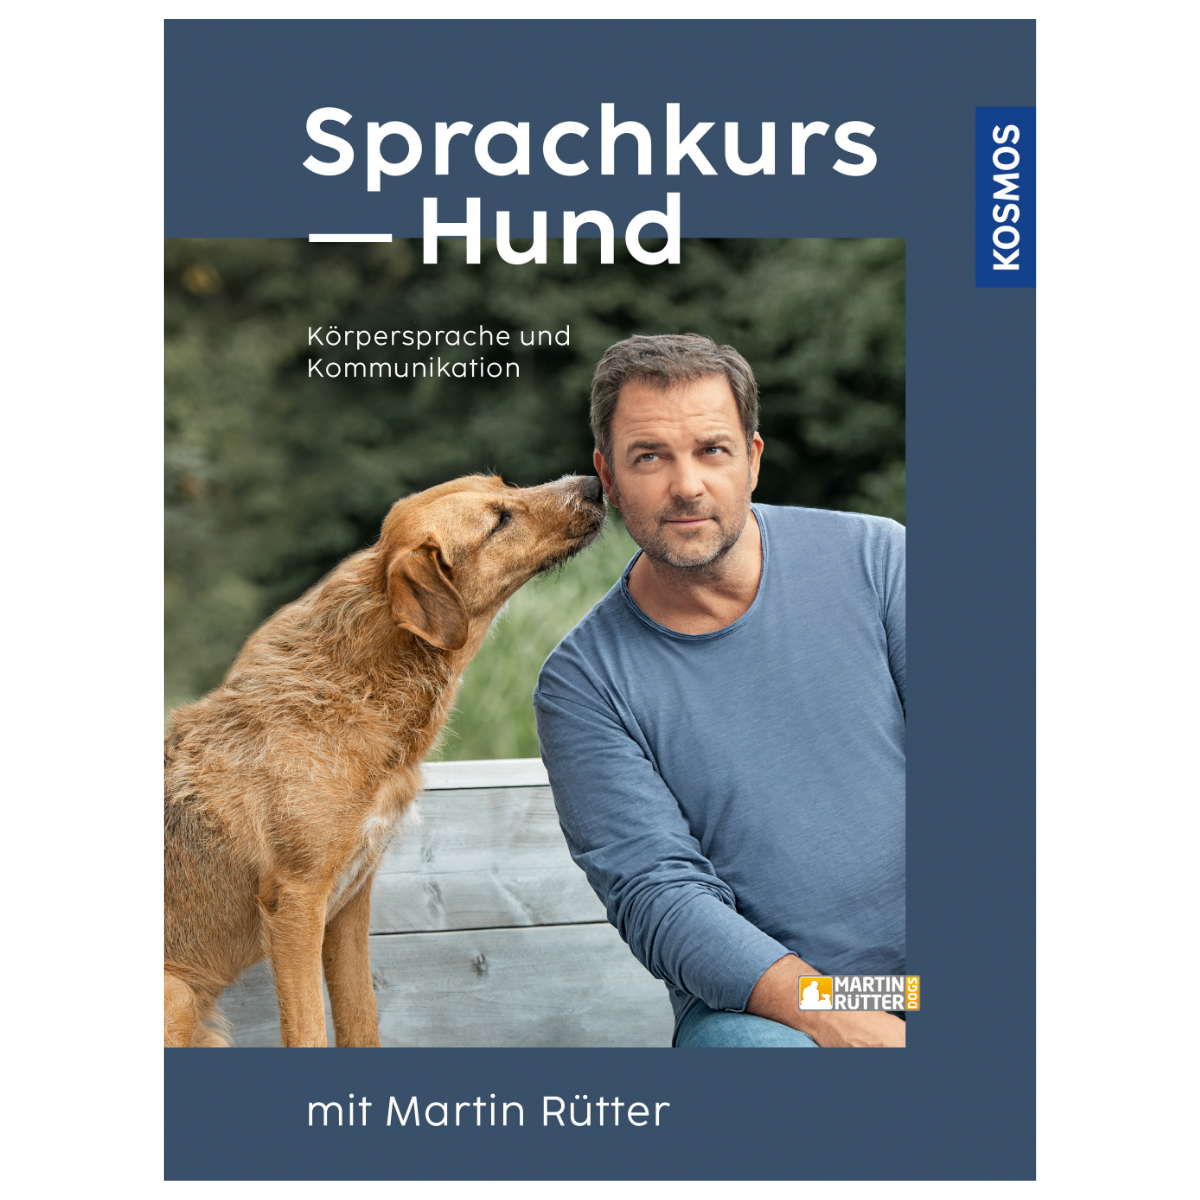 Buch - Sprachkurs Hund mit Martin Rütter